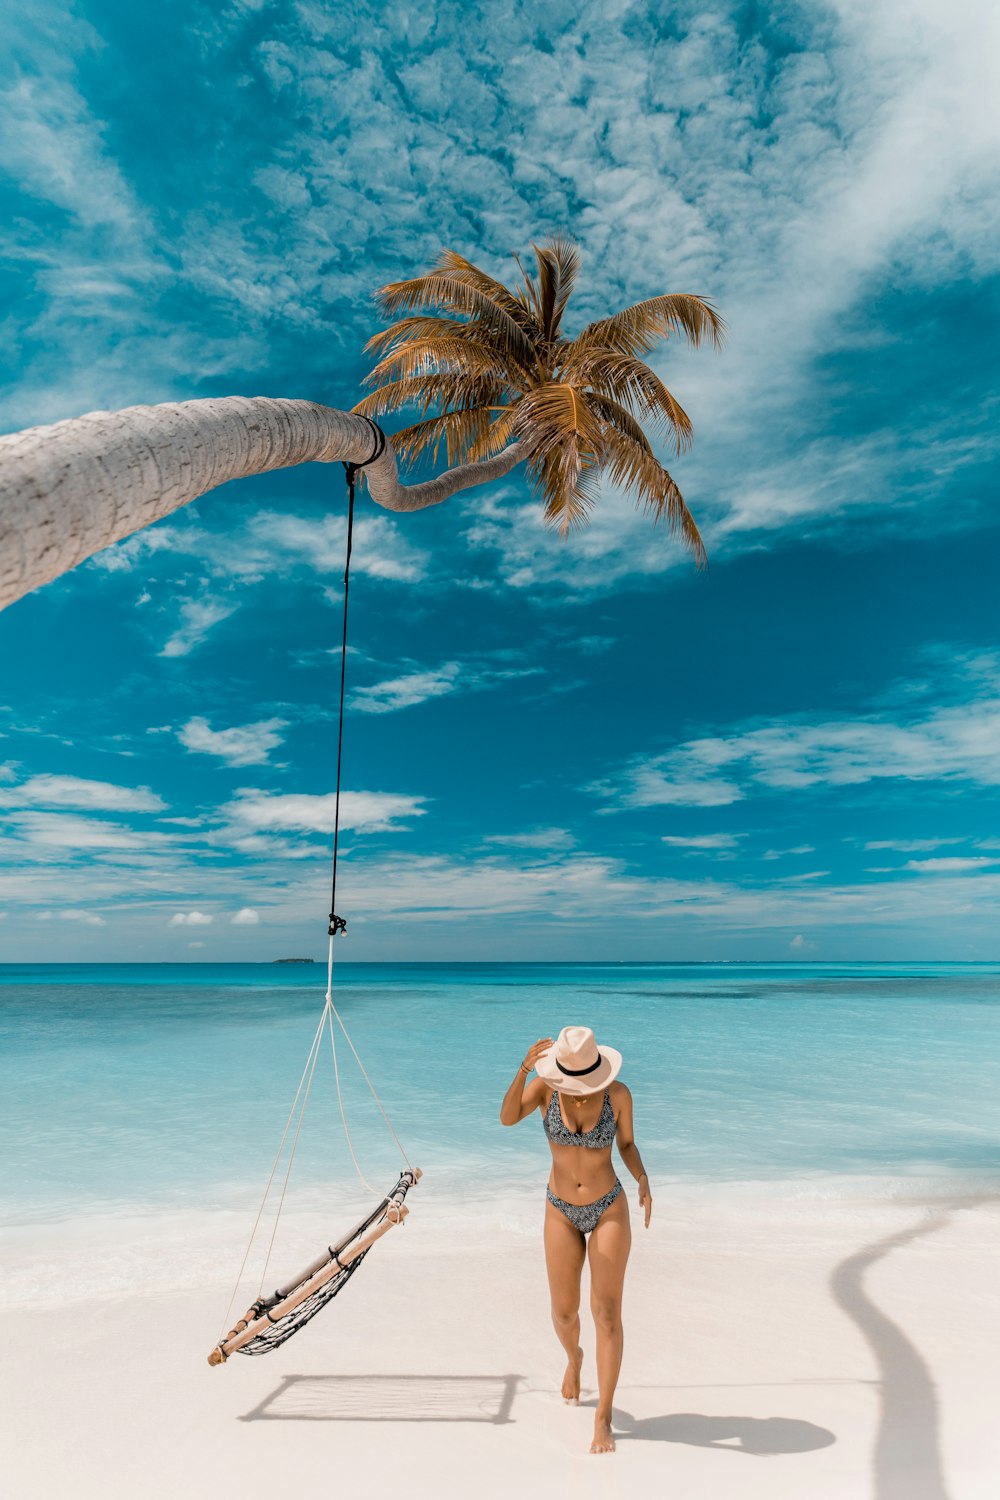 une personne debout sur une plage avec un palmier et un bateau